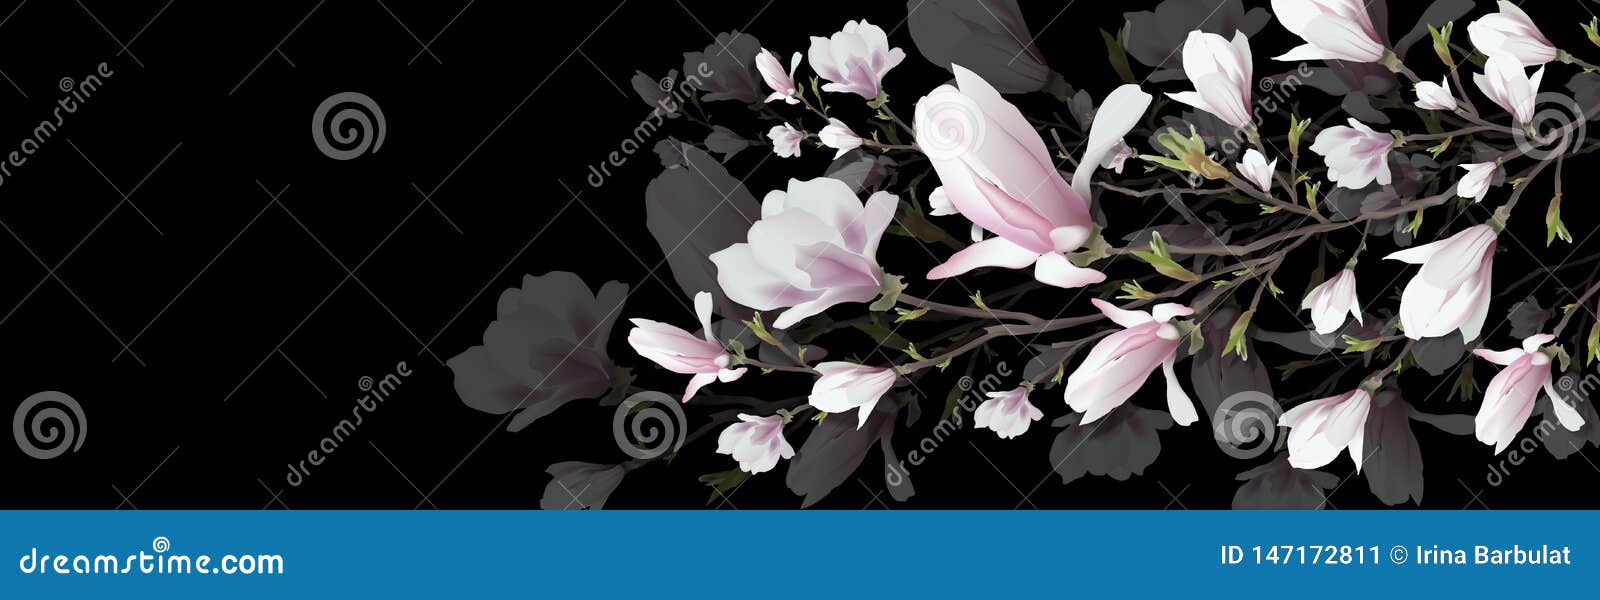 Ρεαλιστικό λουλούδι Magnolia που απομονώνεται στο μαύρο υπόβαθρο Ο κλάδος Magnolia είναι ένα σύμβολο της άνοιξης, καλοκαίρι, θηλυ. Ρεαλιστικό λουλούδι, κλάδος Magnolia που απομονώνεται στο μαύρο υπόβαθρο Ο κλάδος Magnolia είναι ένα σύμβολο της άνοιξης, καλοκαίρι, θηλυκή γοητεία, θηλυκότητα στο ύφος του ρεαλισμού τρισδιάστατο, ογκομετρικό ρόδινο λουλούδι, υπόβαθρο για την πρόσκληση, σχέδιο, παρουσίαση Της μεγάλης οθόνης r